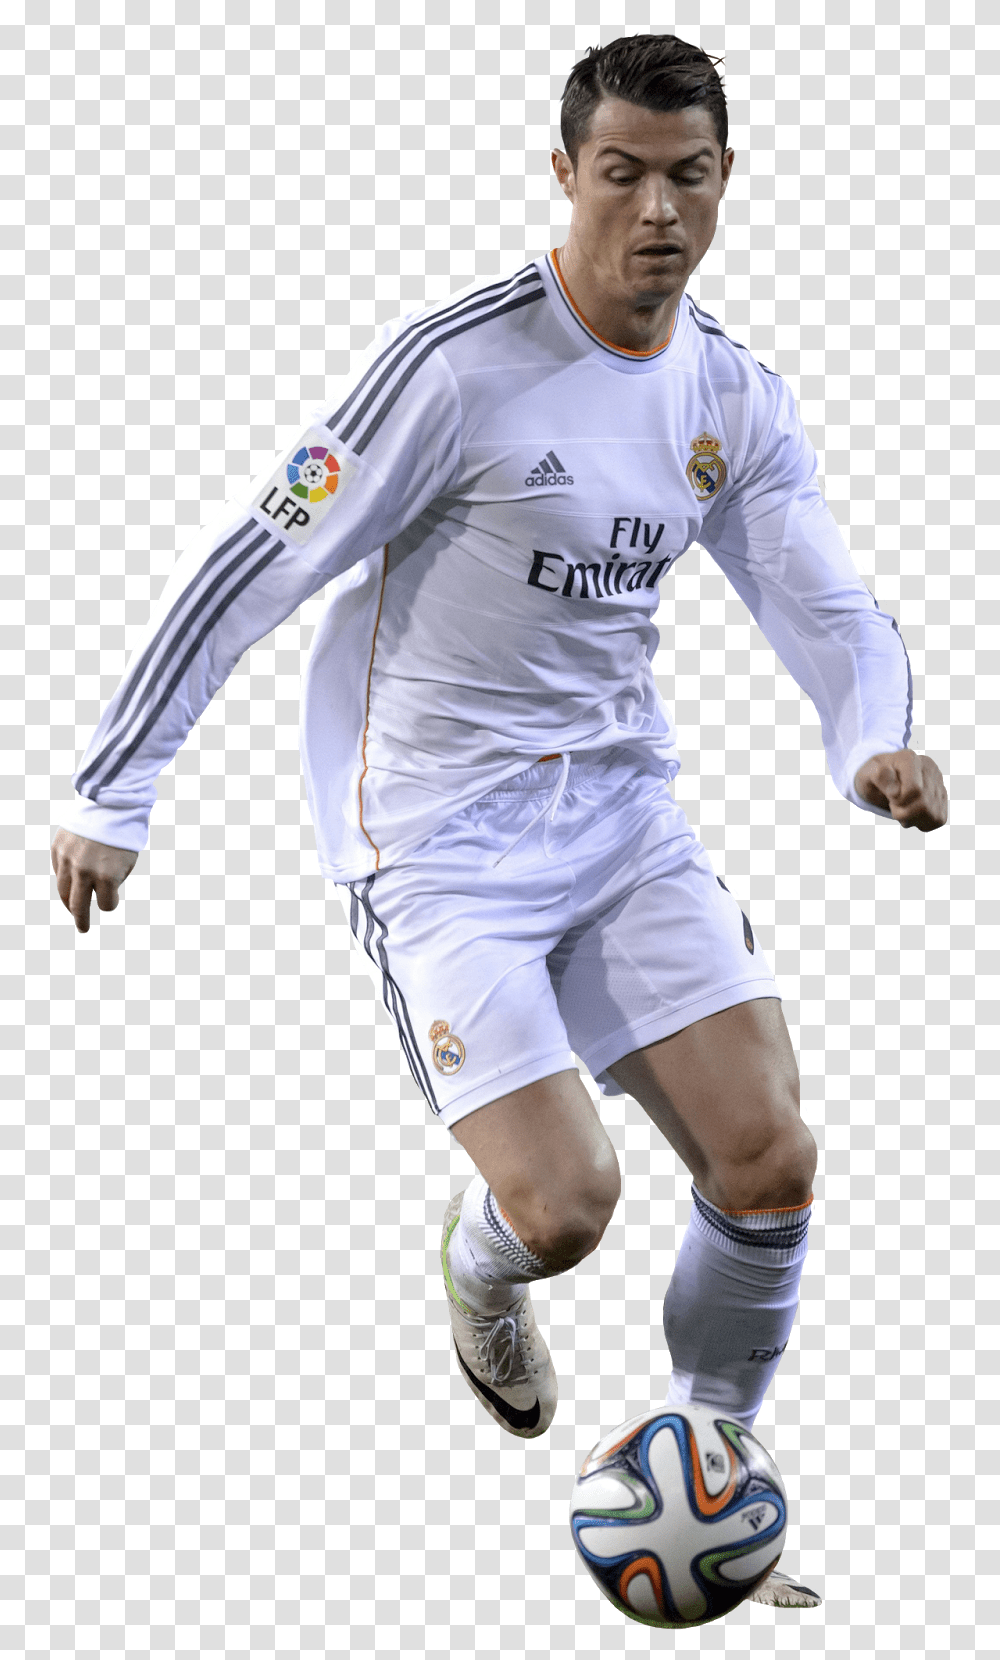 Real Cristiano Madrid Ronaldo Football Player C Jugadores De Futbol Ronaldo, Person, Soccer Ball, Team Sport Transparent Png